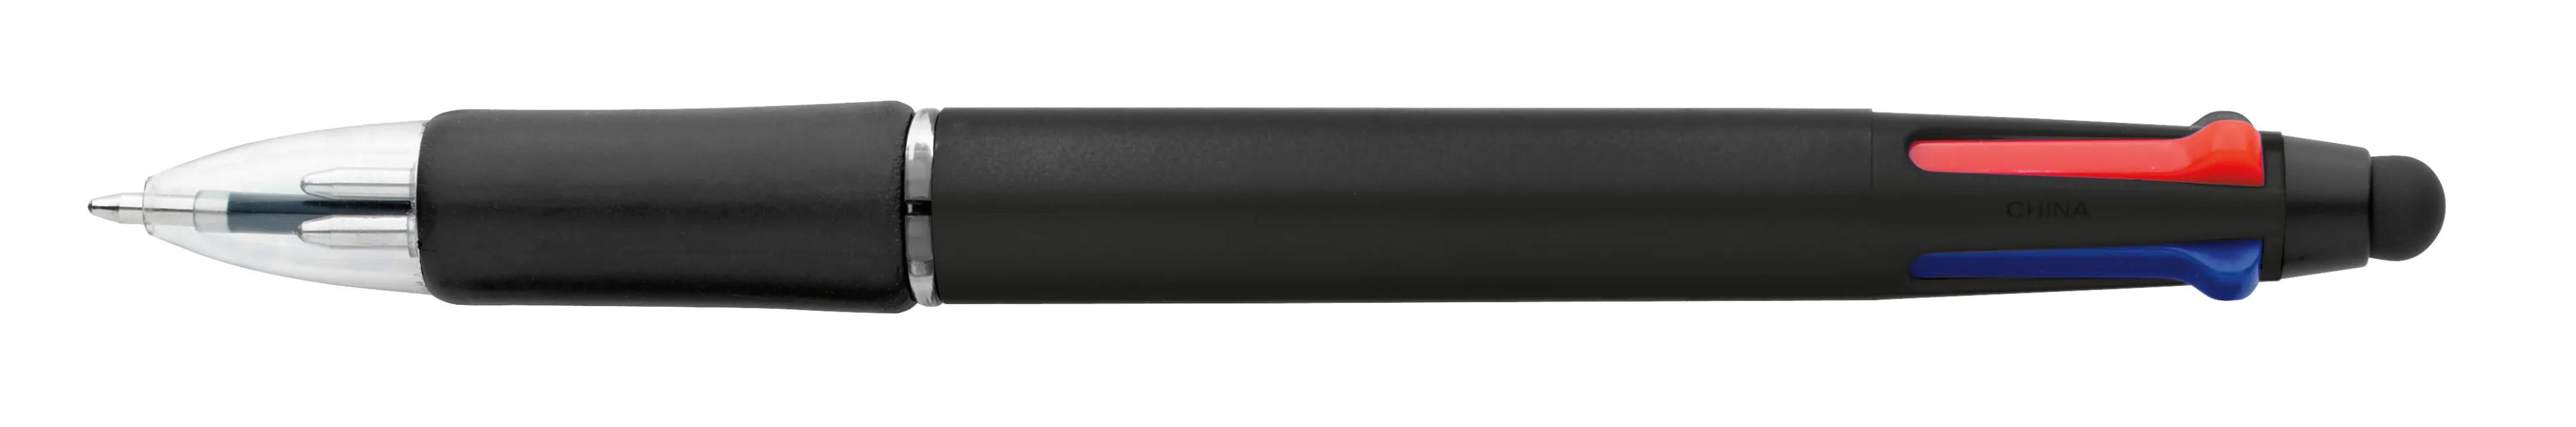 Orbitor Metallic Stylus Pen 6 of 56